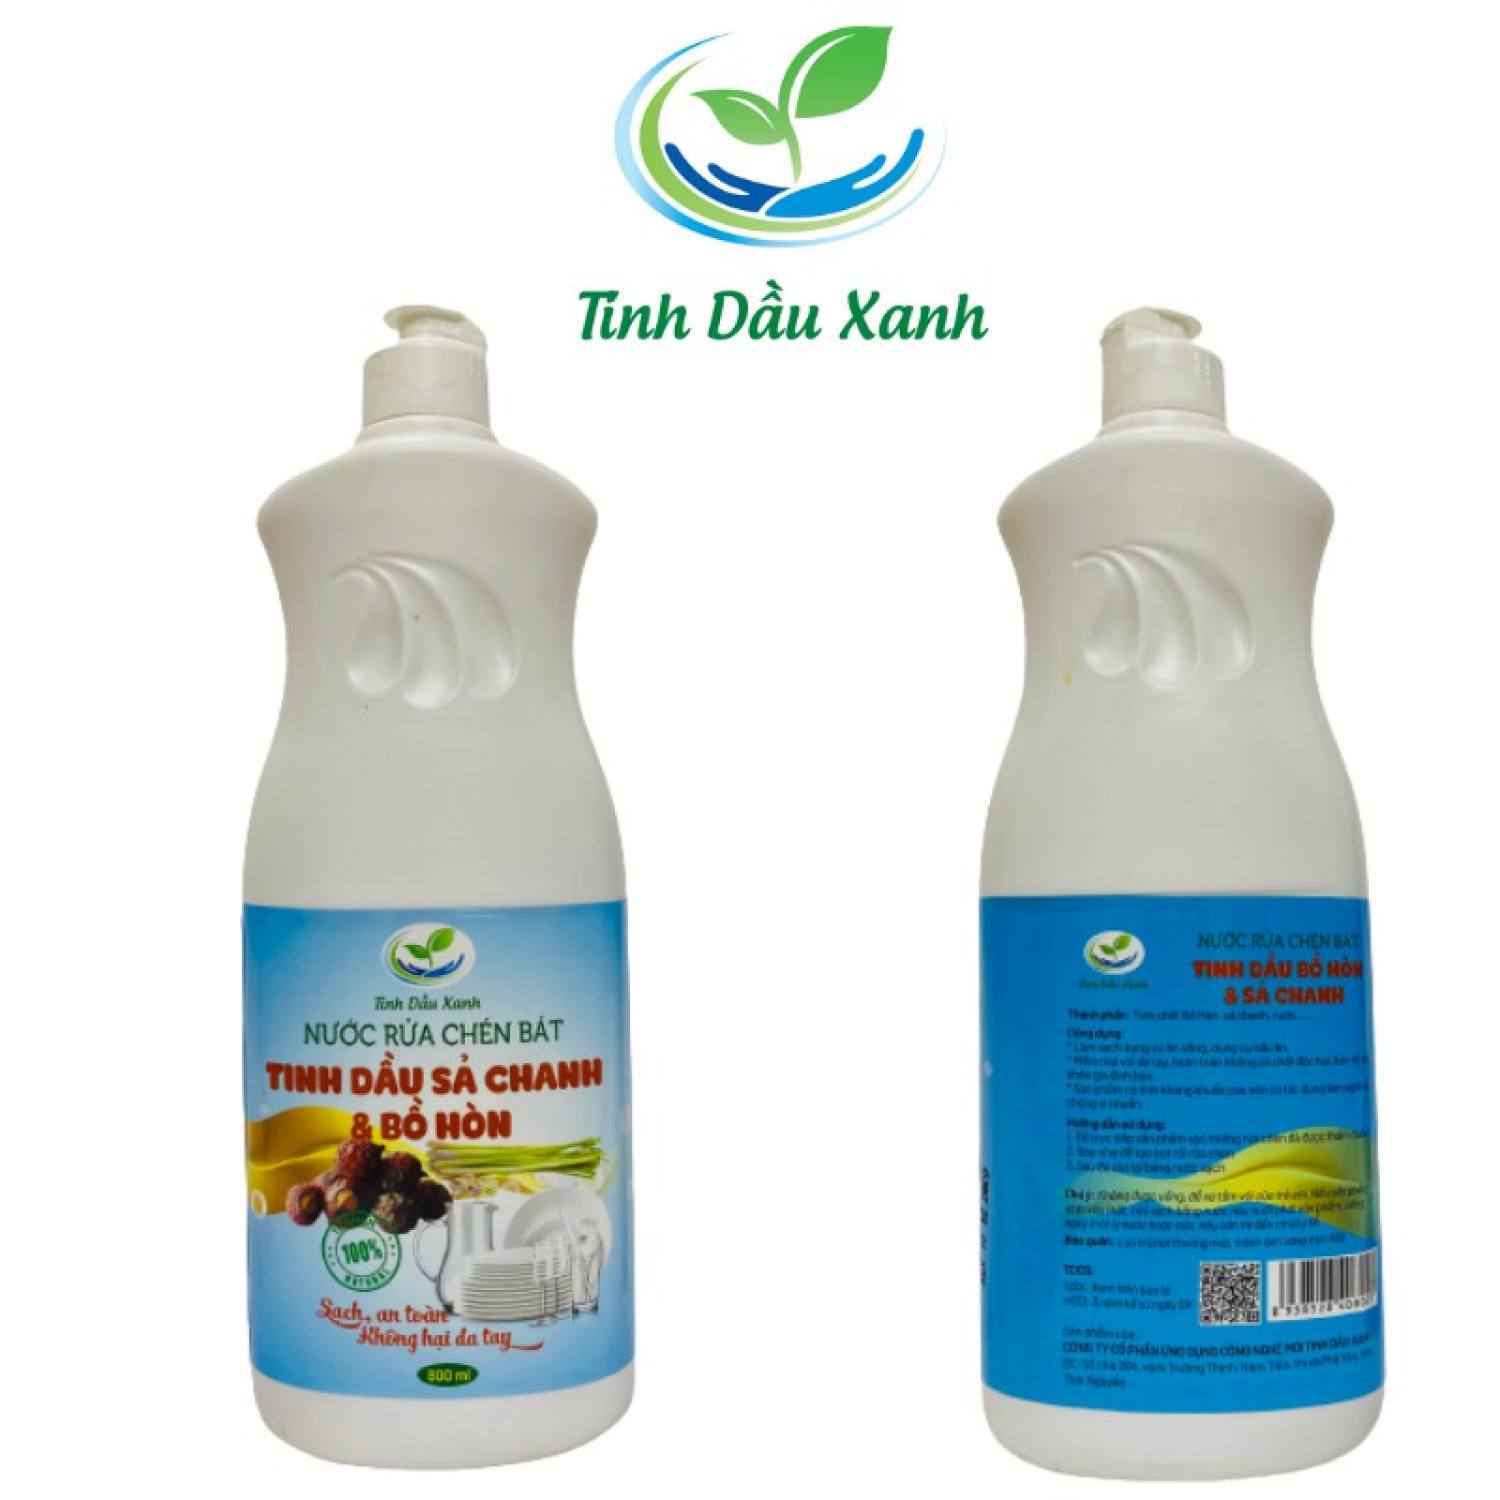 Nước rửa chén (bát) Tinh dầu xanh 800ml Chiết xuất thiên nhiên, không chất tẩy rửa an toàn tuyệt đối cho da